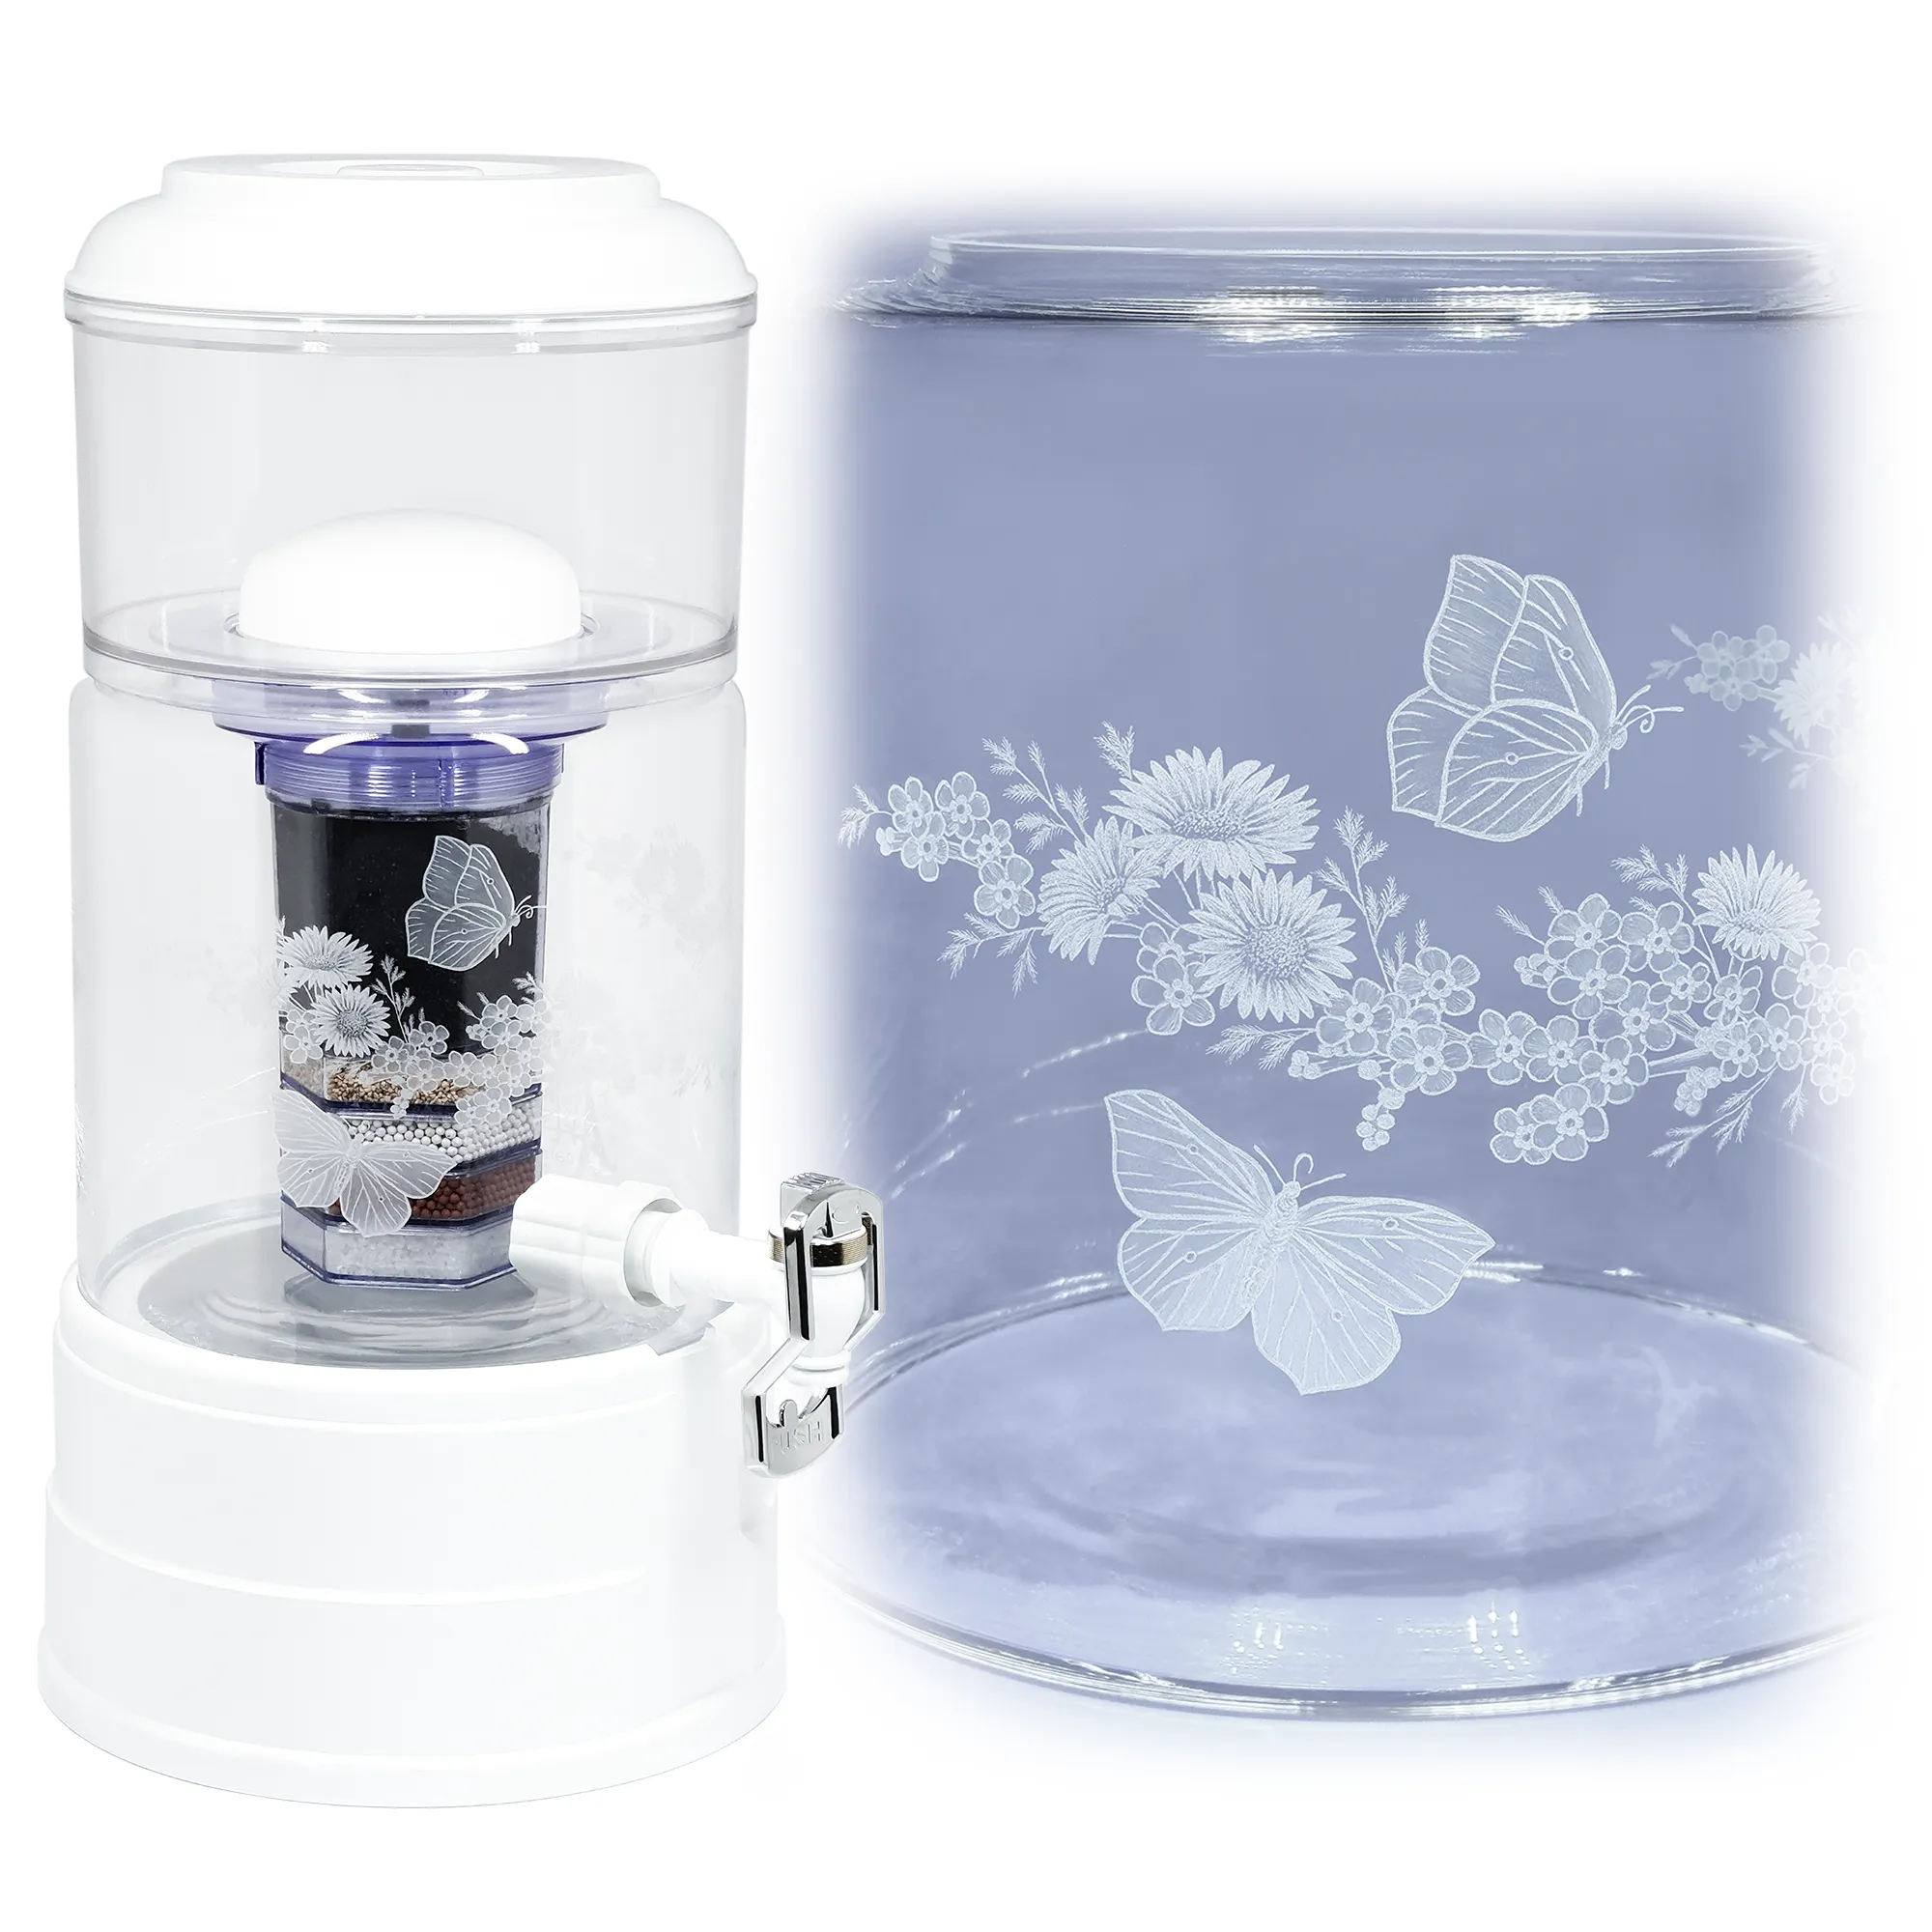 Ein Acala Wasserfilter in klarem Glas mit dem gravierten Kranz,umlaufende um das runde Glas.In dem Granz sind Vergissmeinnicht, Schmetterlinge und gänseblümchen.Rechts von dem Wasserfilter ist eine Nahaufnahme der Gravur. 